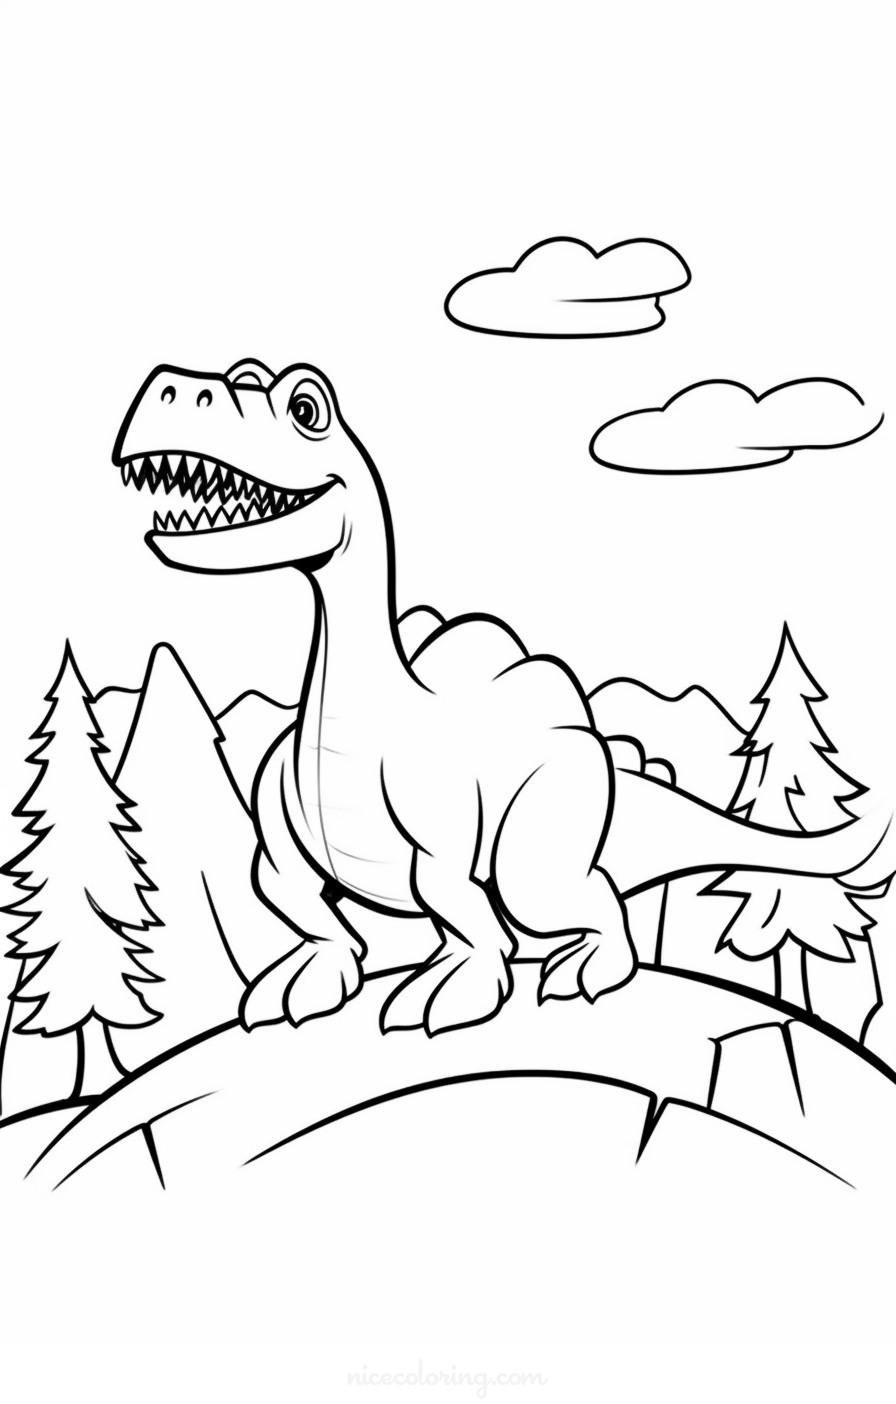 Um Tiranossauro Rex caminhando pela terra com vulcões ao fundo